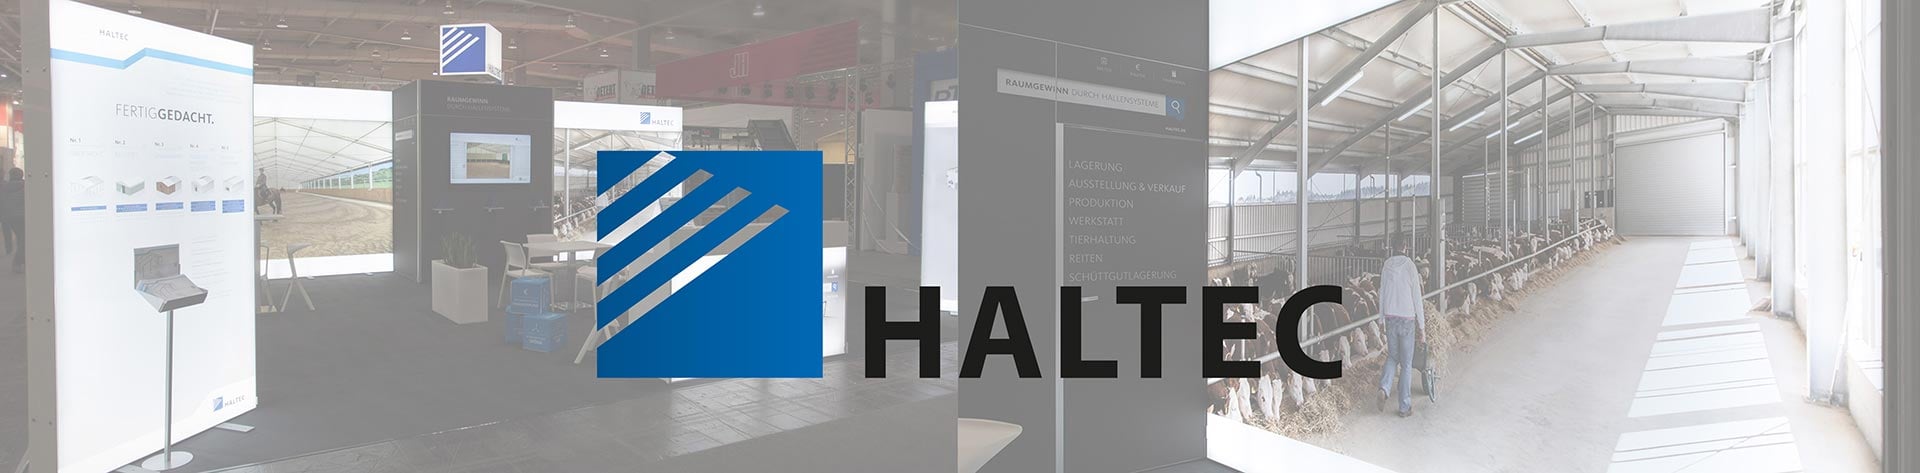 Case Study Haltec Hallensysteme Header